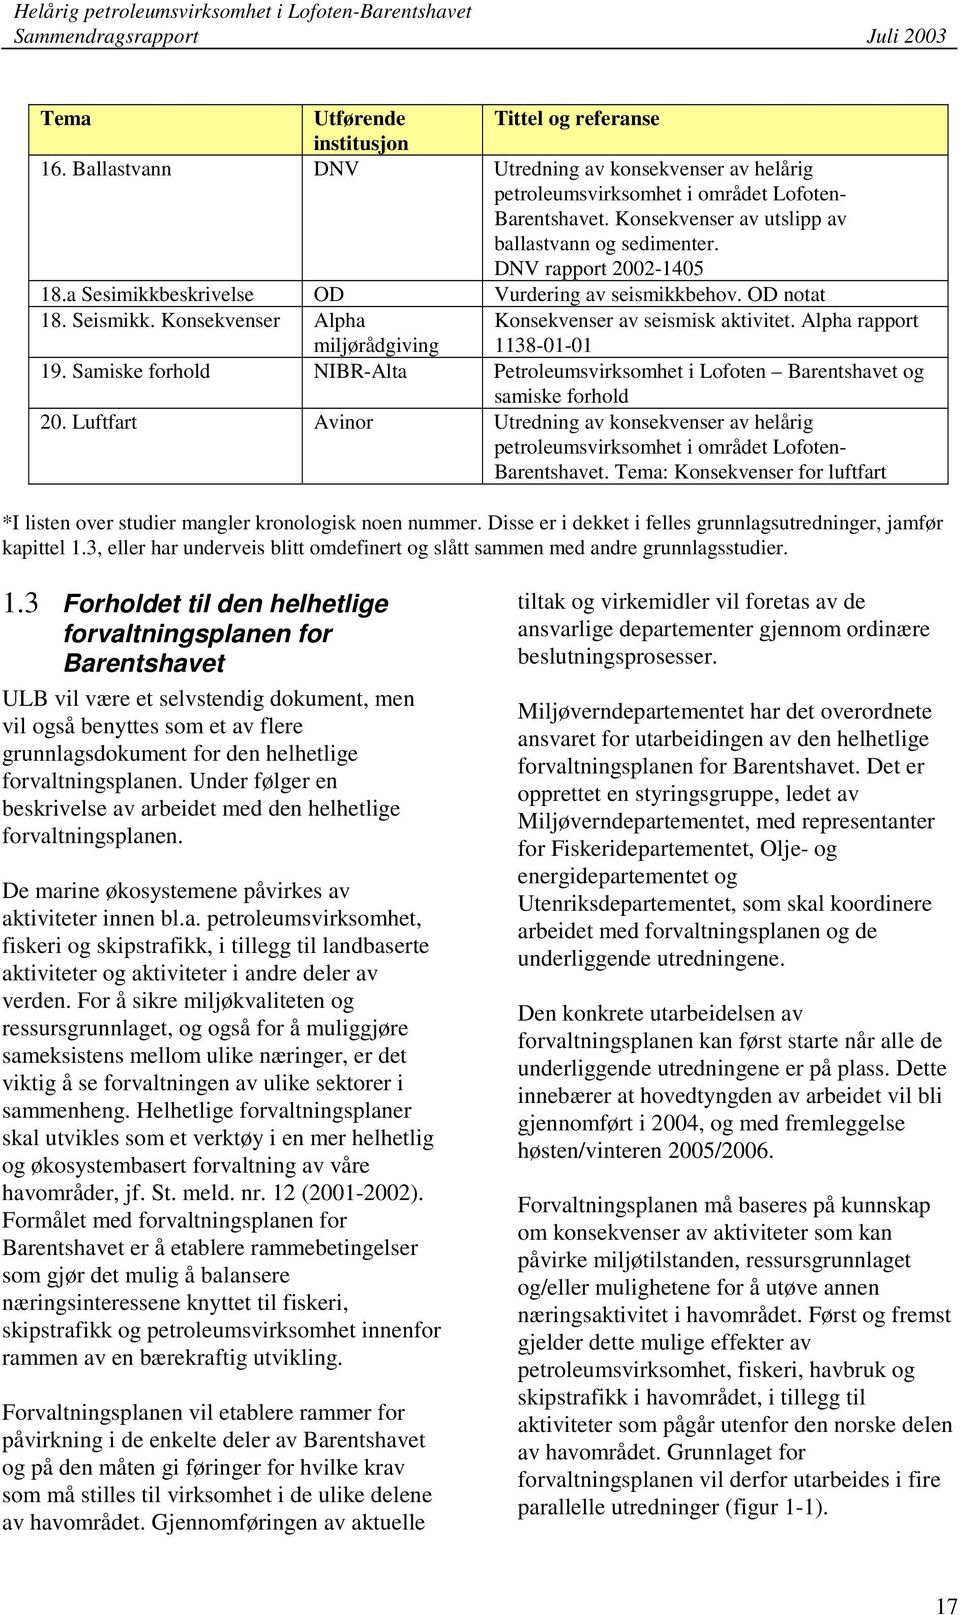 Konsekvenser Alpha miljørådgiving Konsekvenser av seismisk aktivitet. Alpha rapport 1138-01-01 19. Samiske forhold NIBR-Alta Petroleumsvirksomhet i Lofoten Barentshavet og samiske forhold 20.